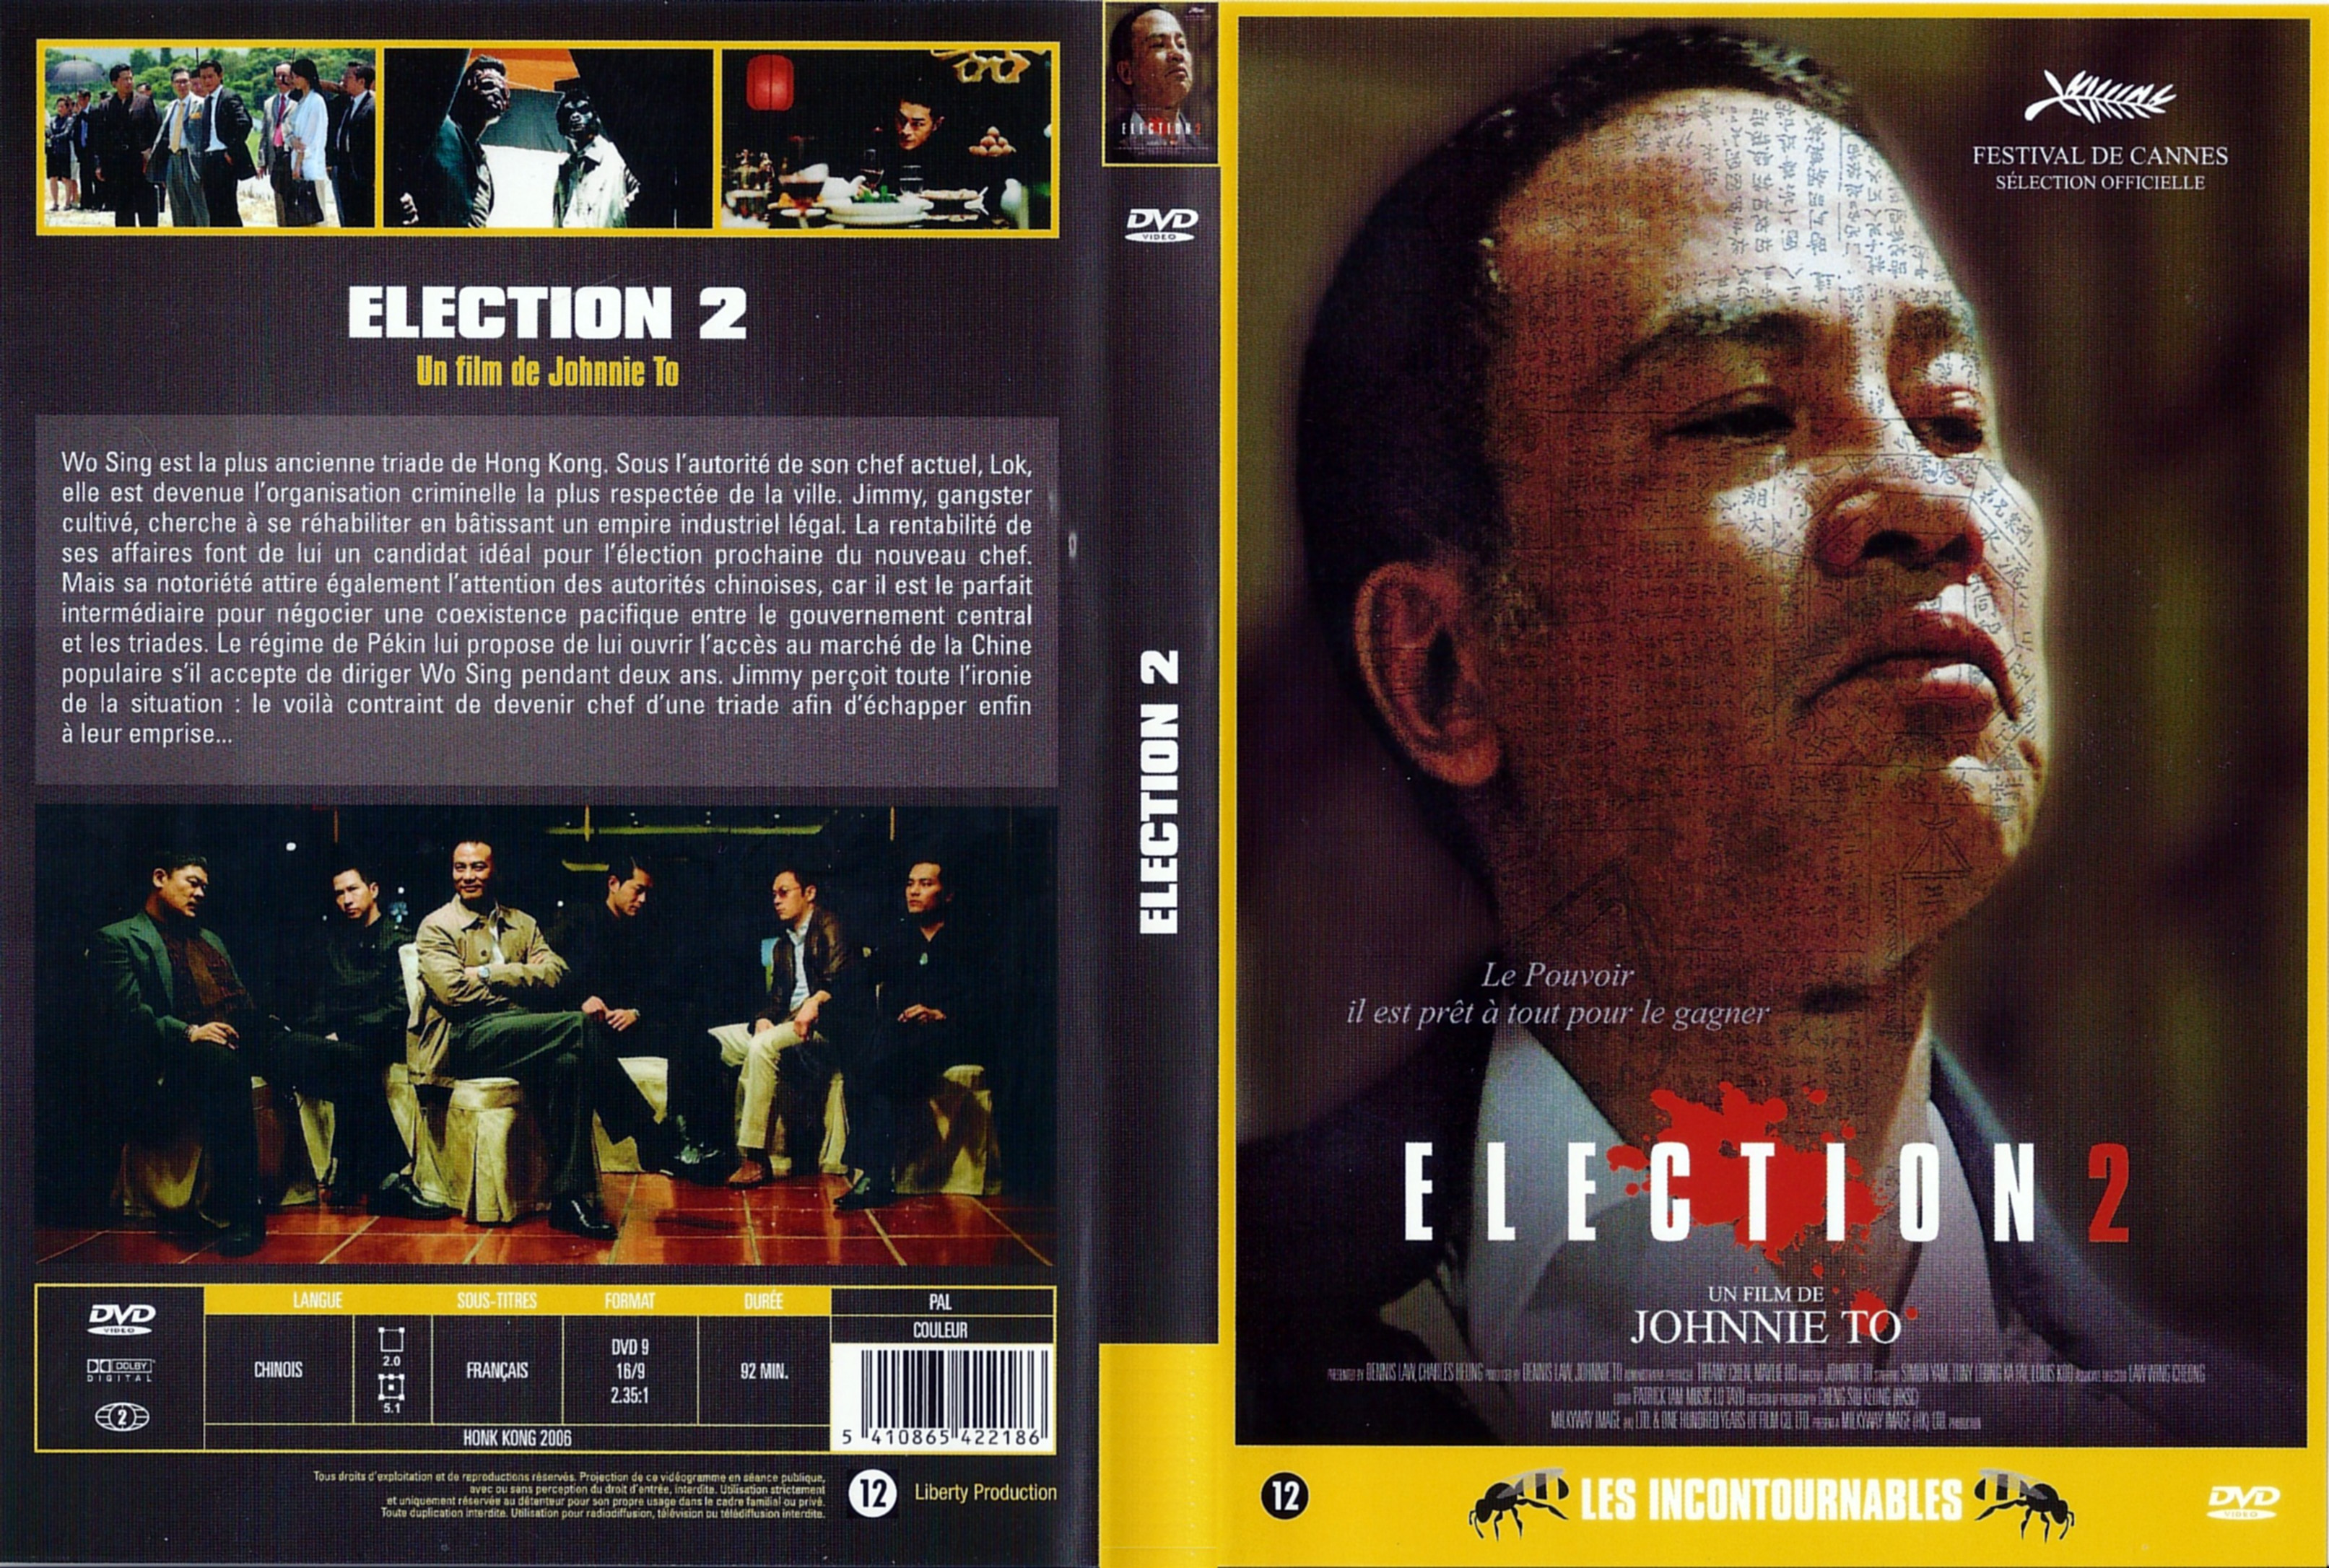 Jaquette DVD Election 2